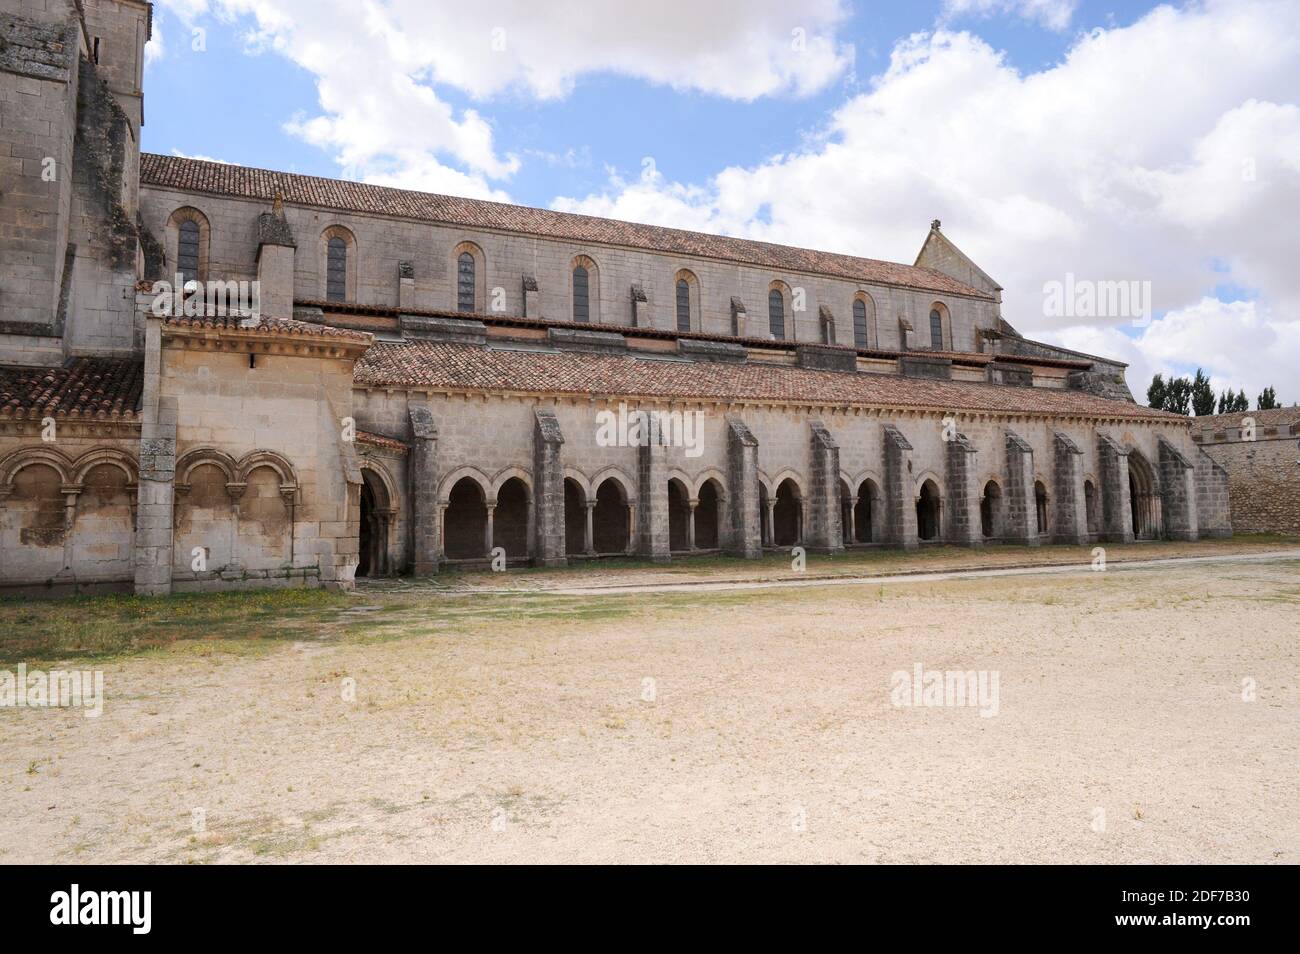 Monasterio de Santa María la Real de las huelgas, cisterciense siglo 12. Provincia de Burgos, Castilla y León, España. Foto de stock